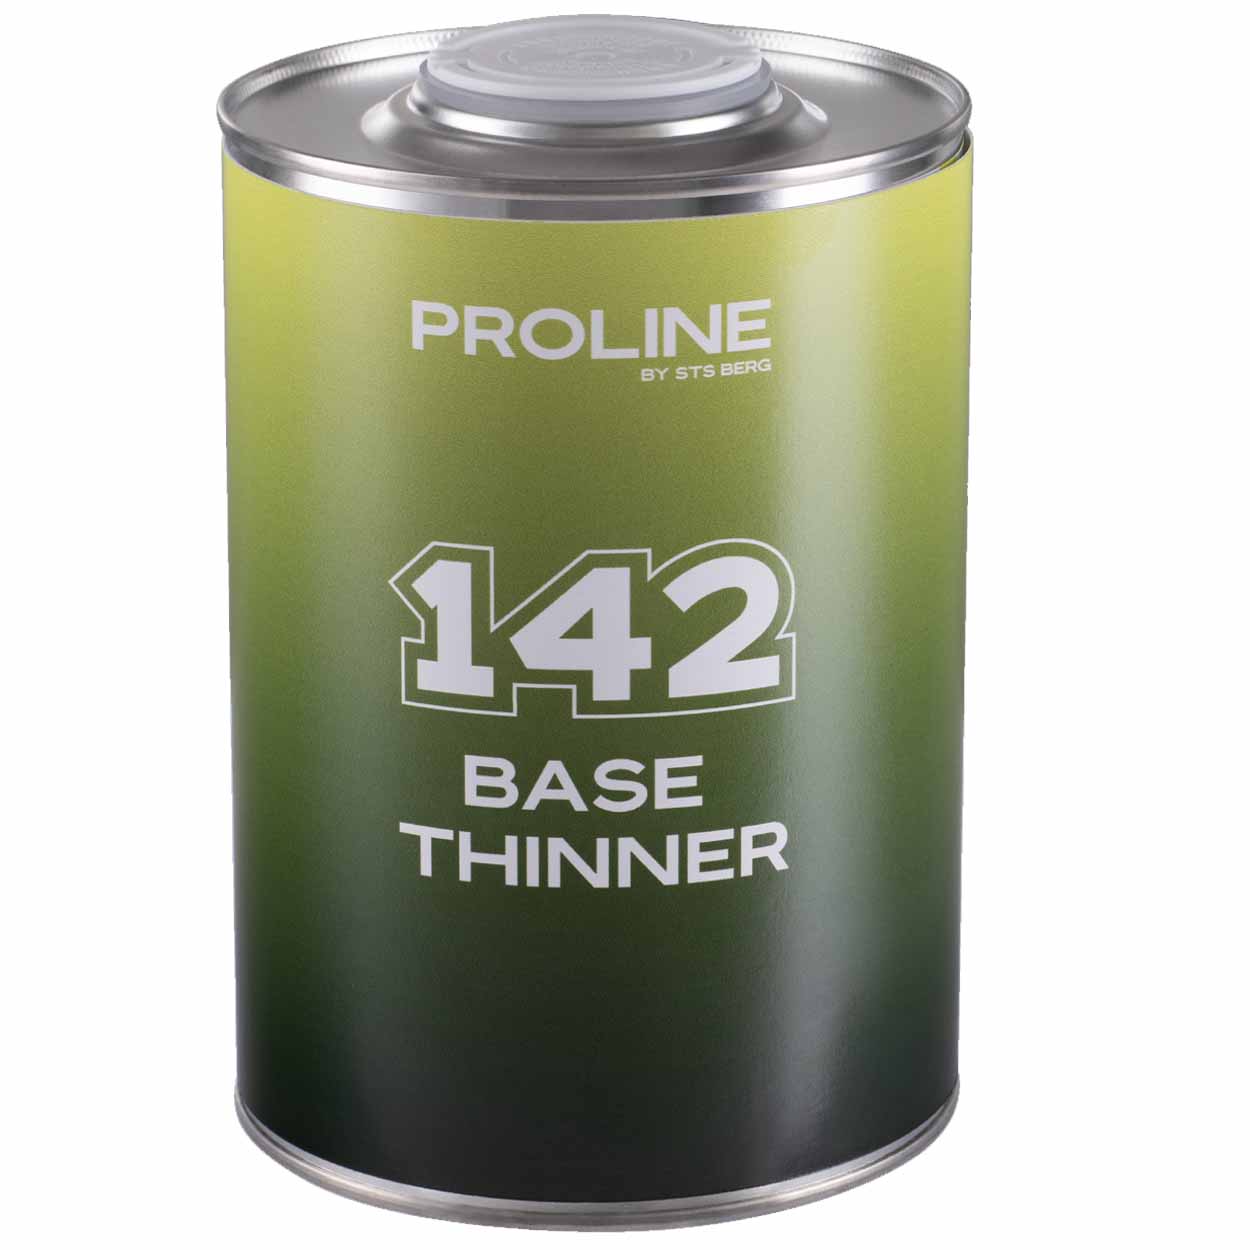 Bázové ředidlo PROLINE 142, 1 litr